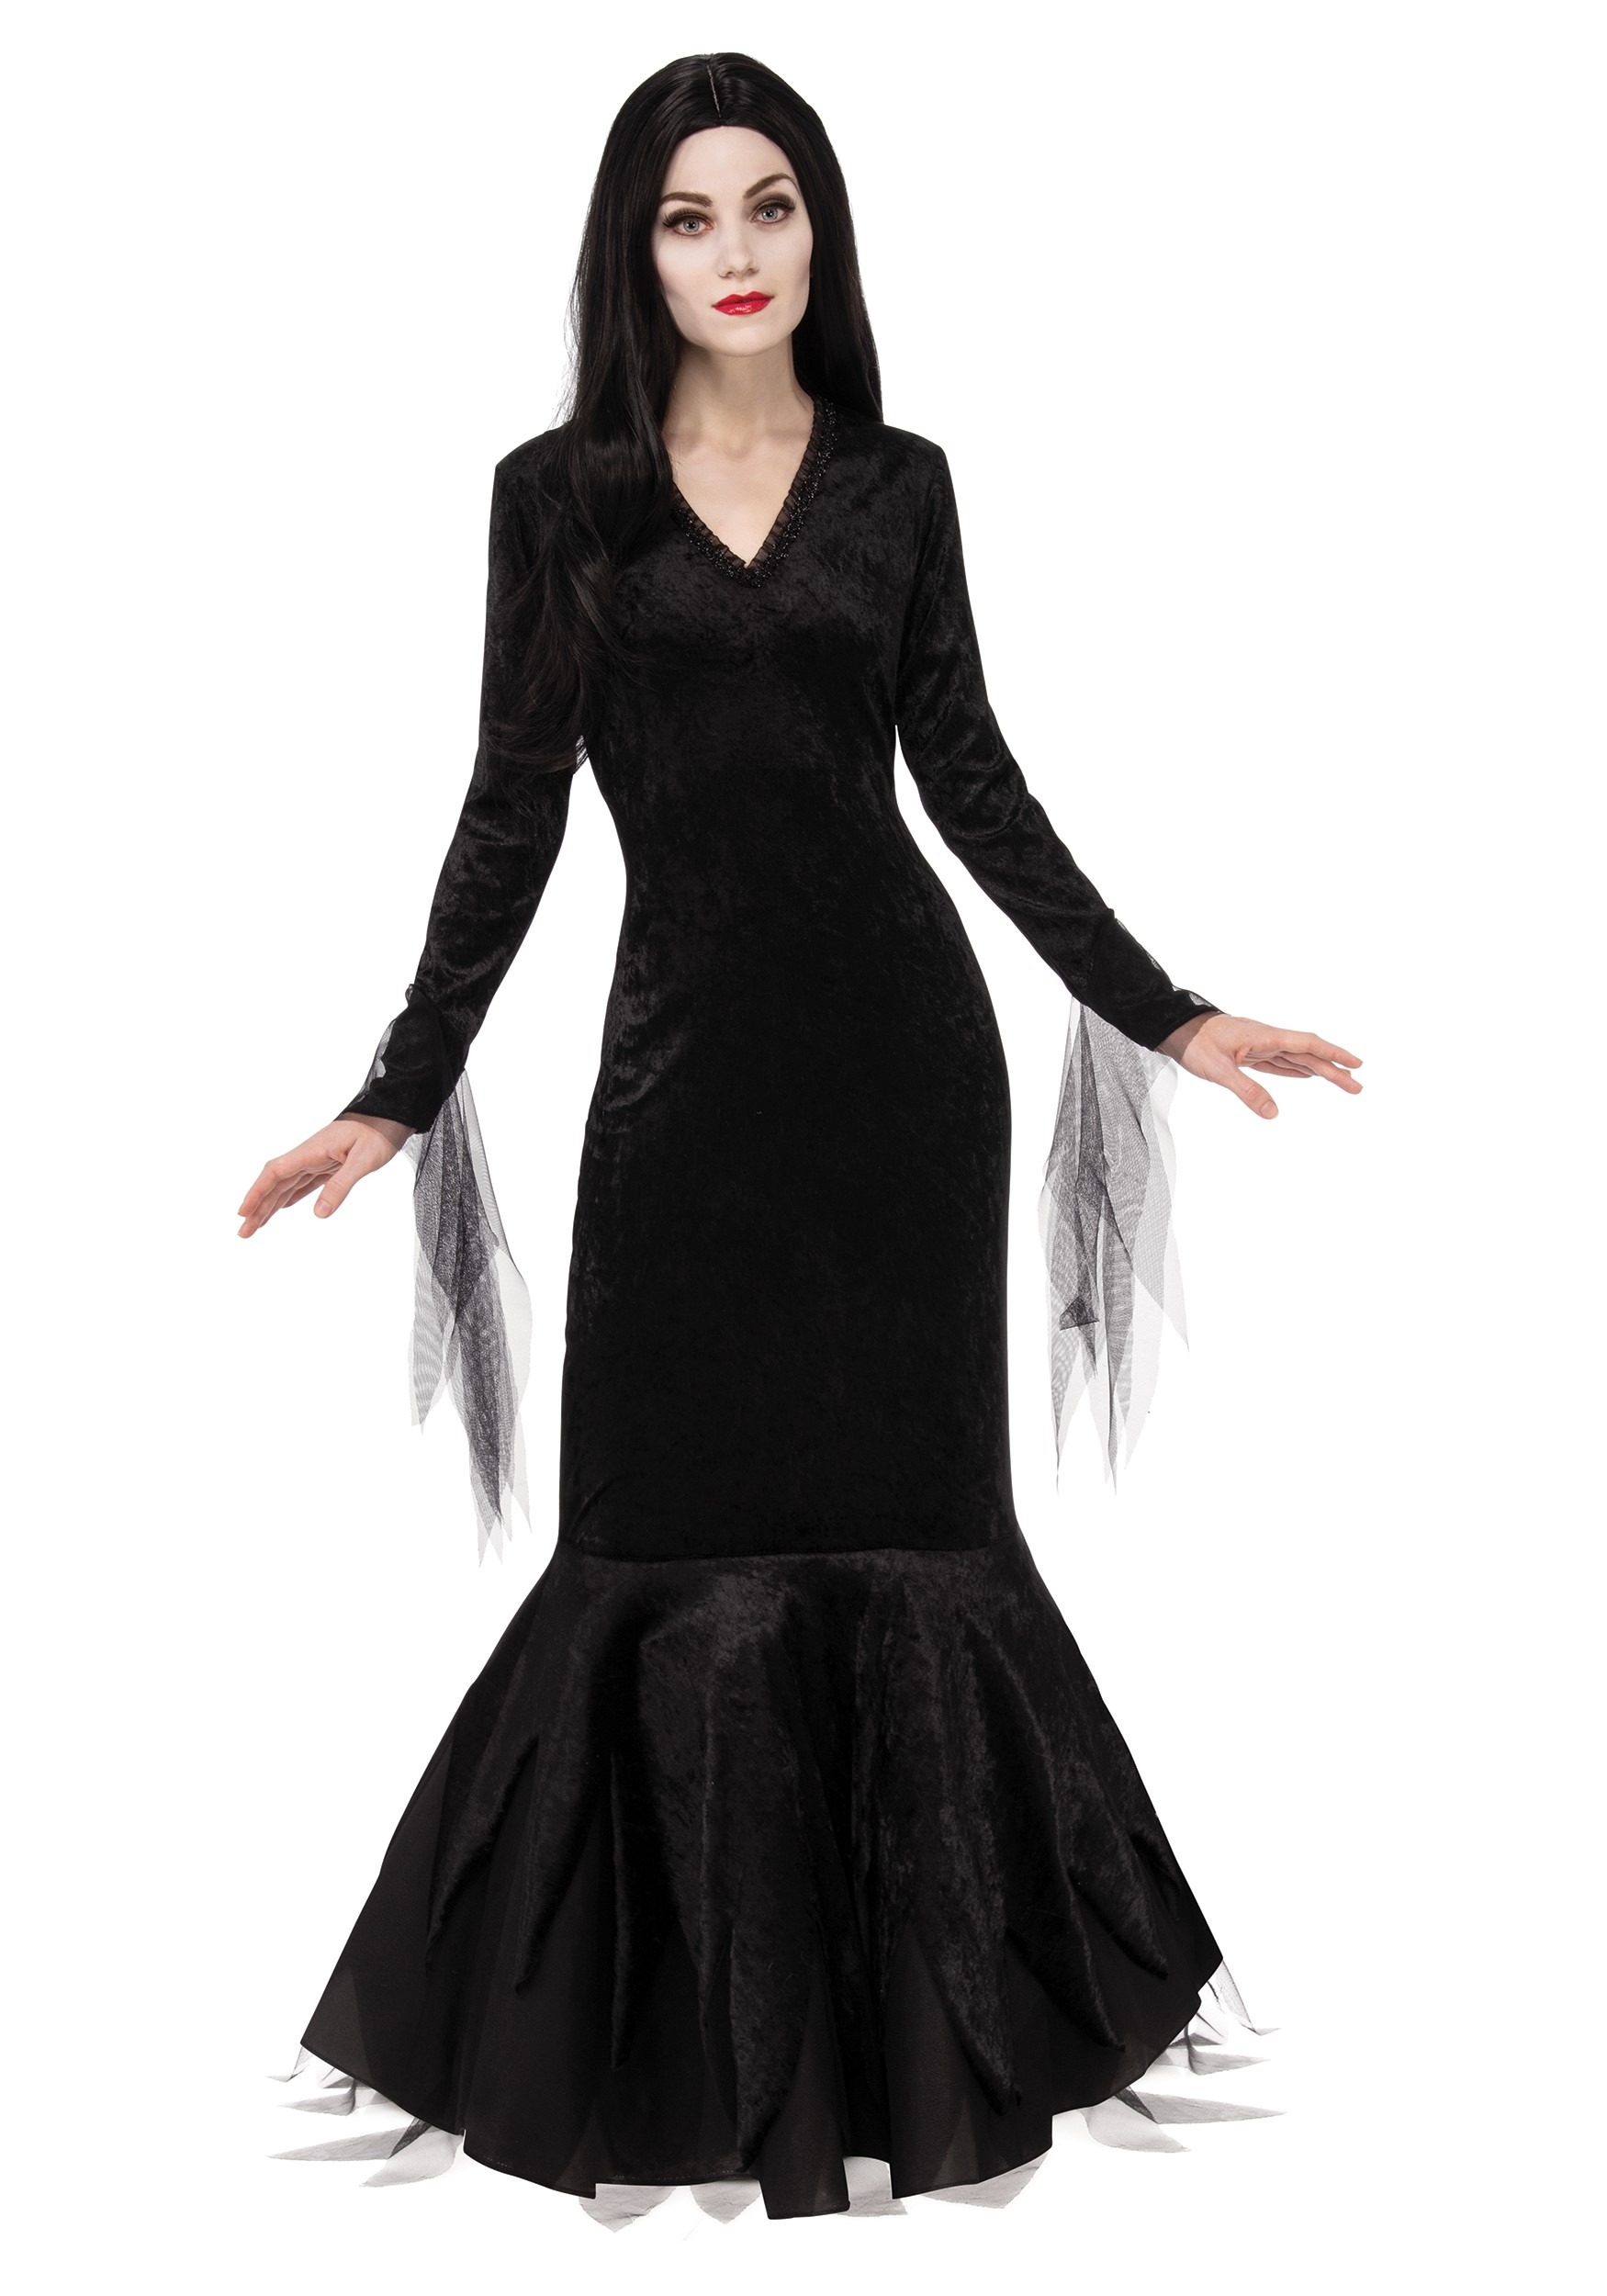 Women's Addams Family Morticia Costume